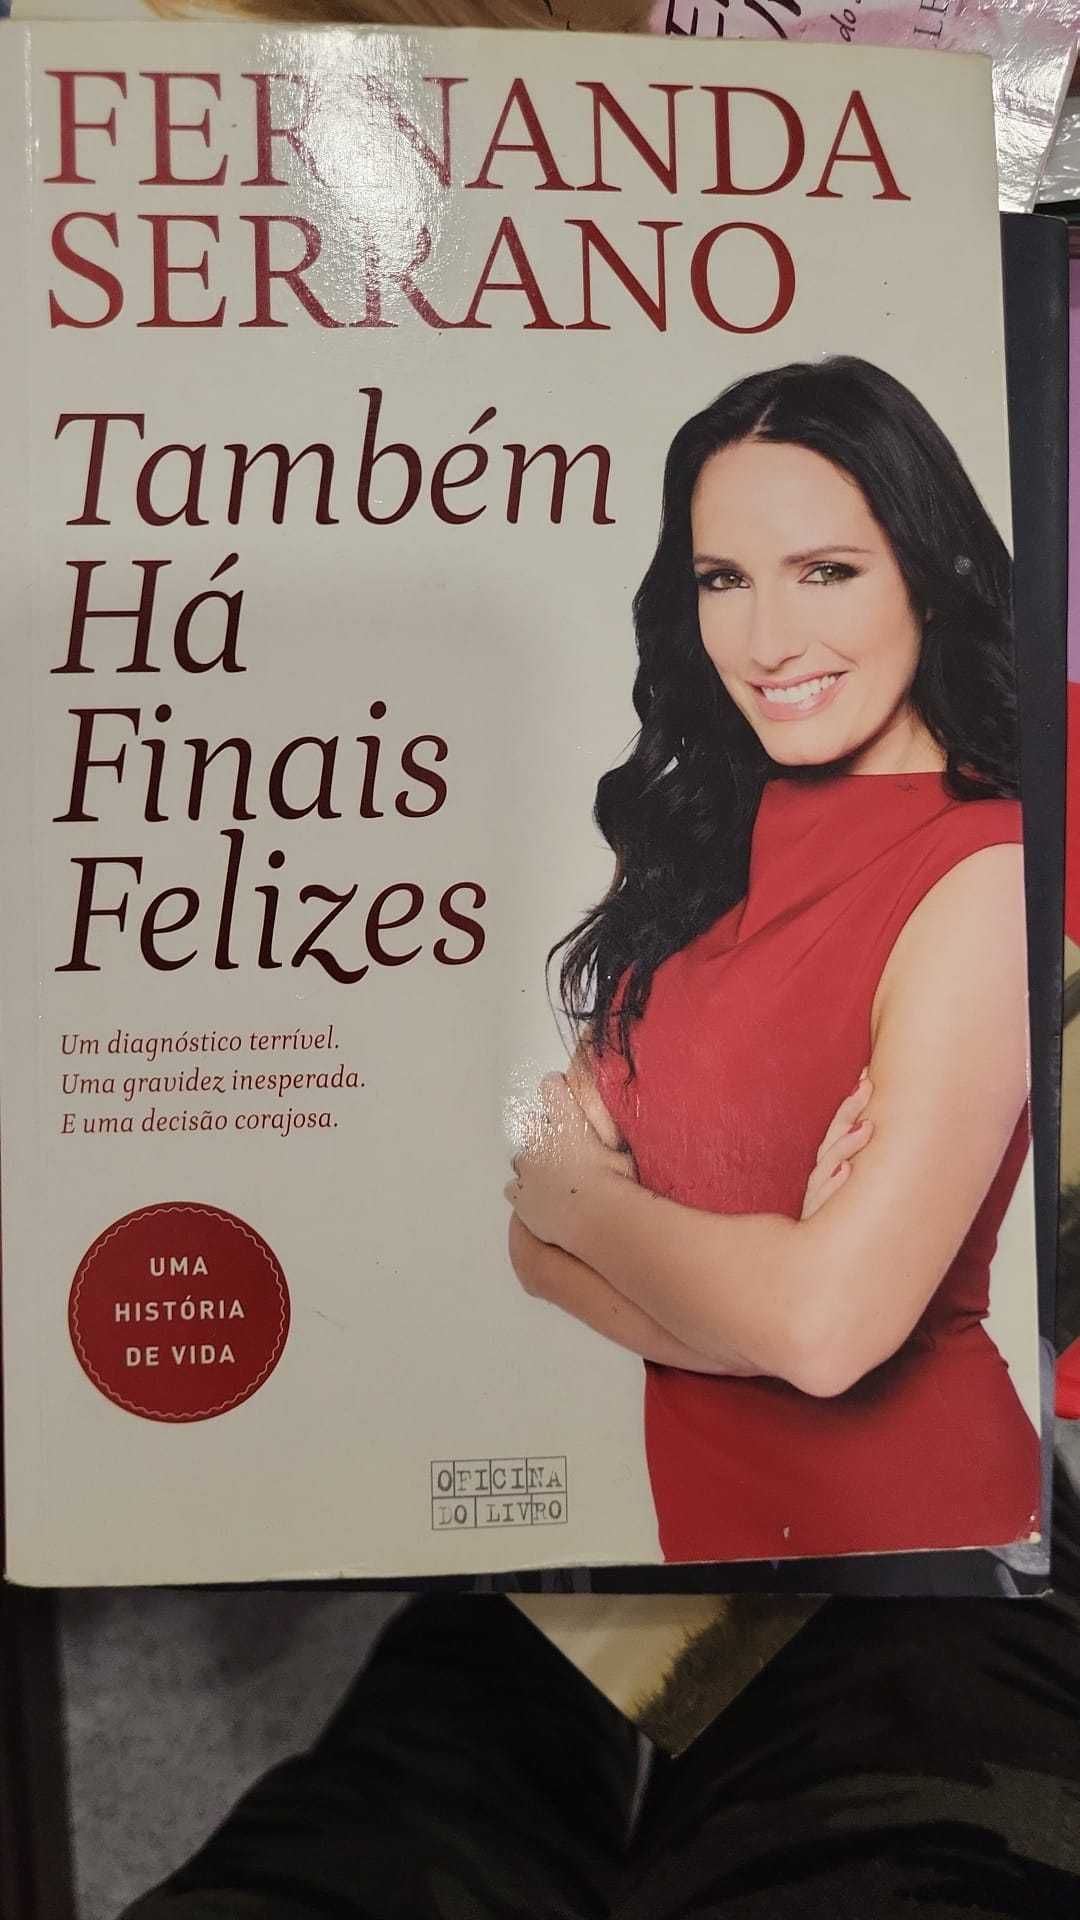 Livro da Fernanda Serrano